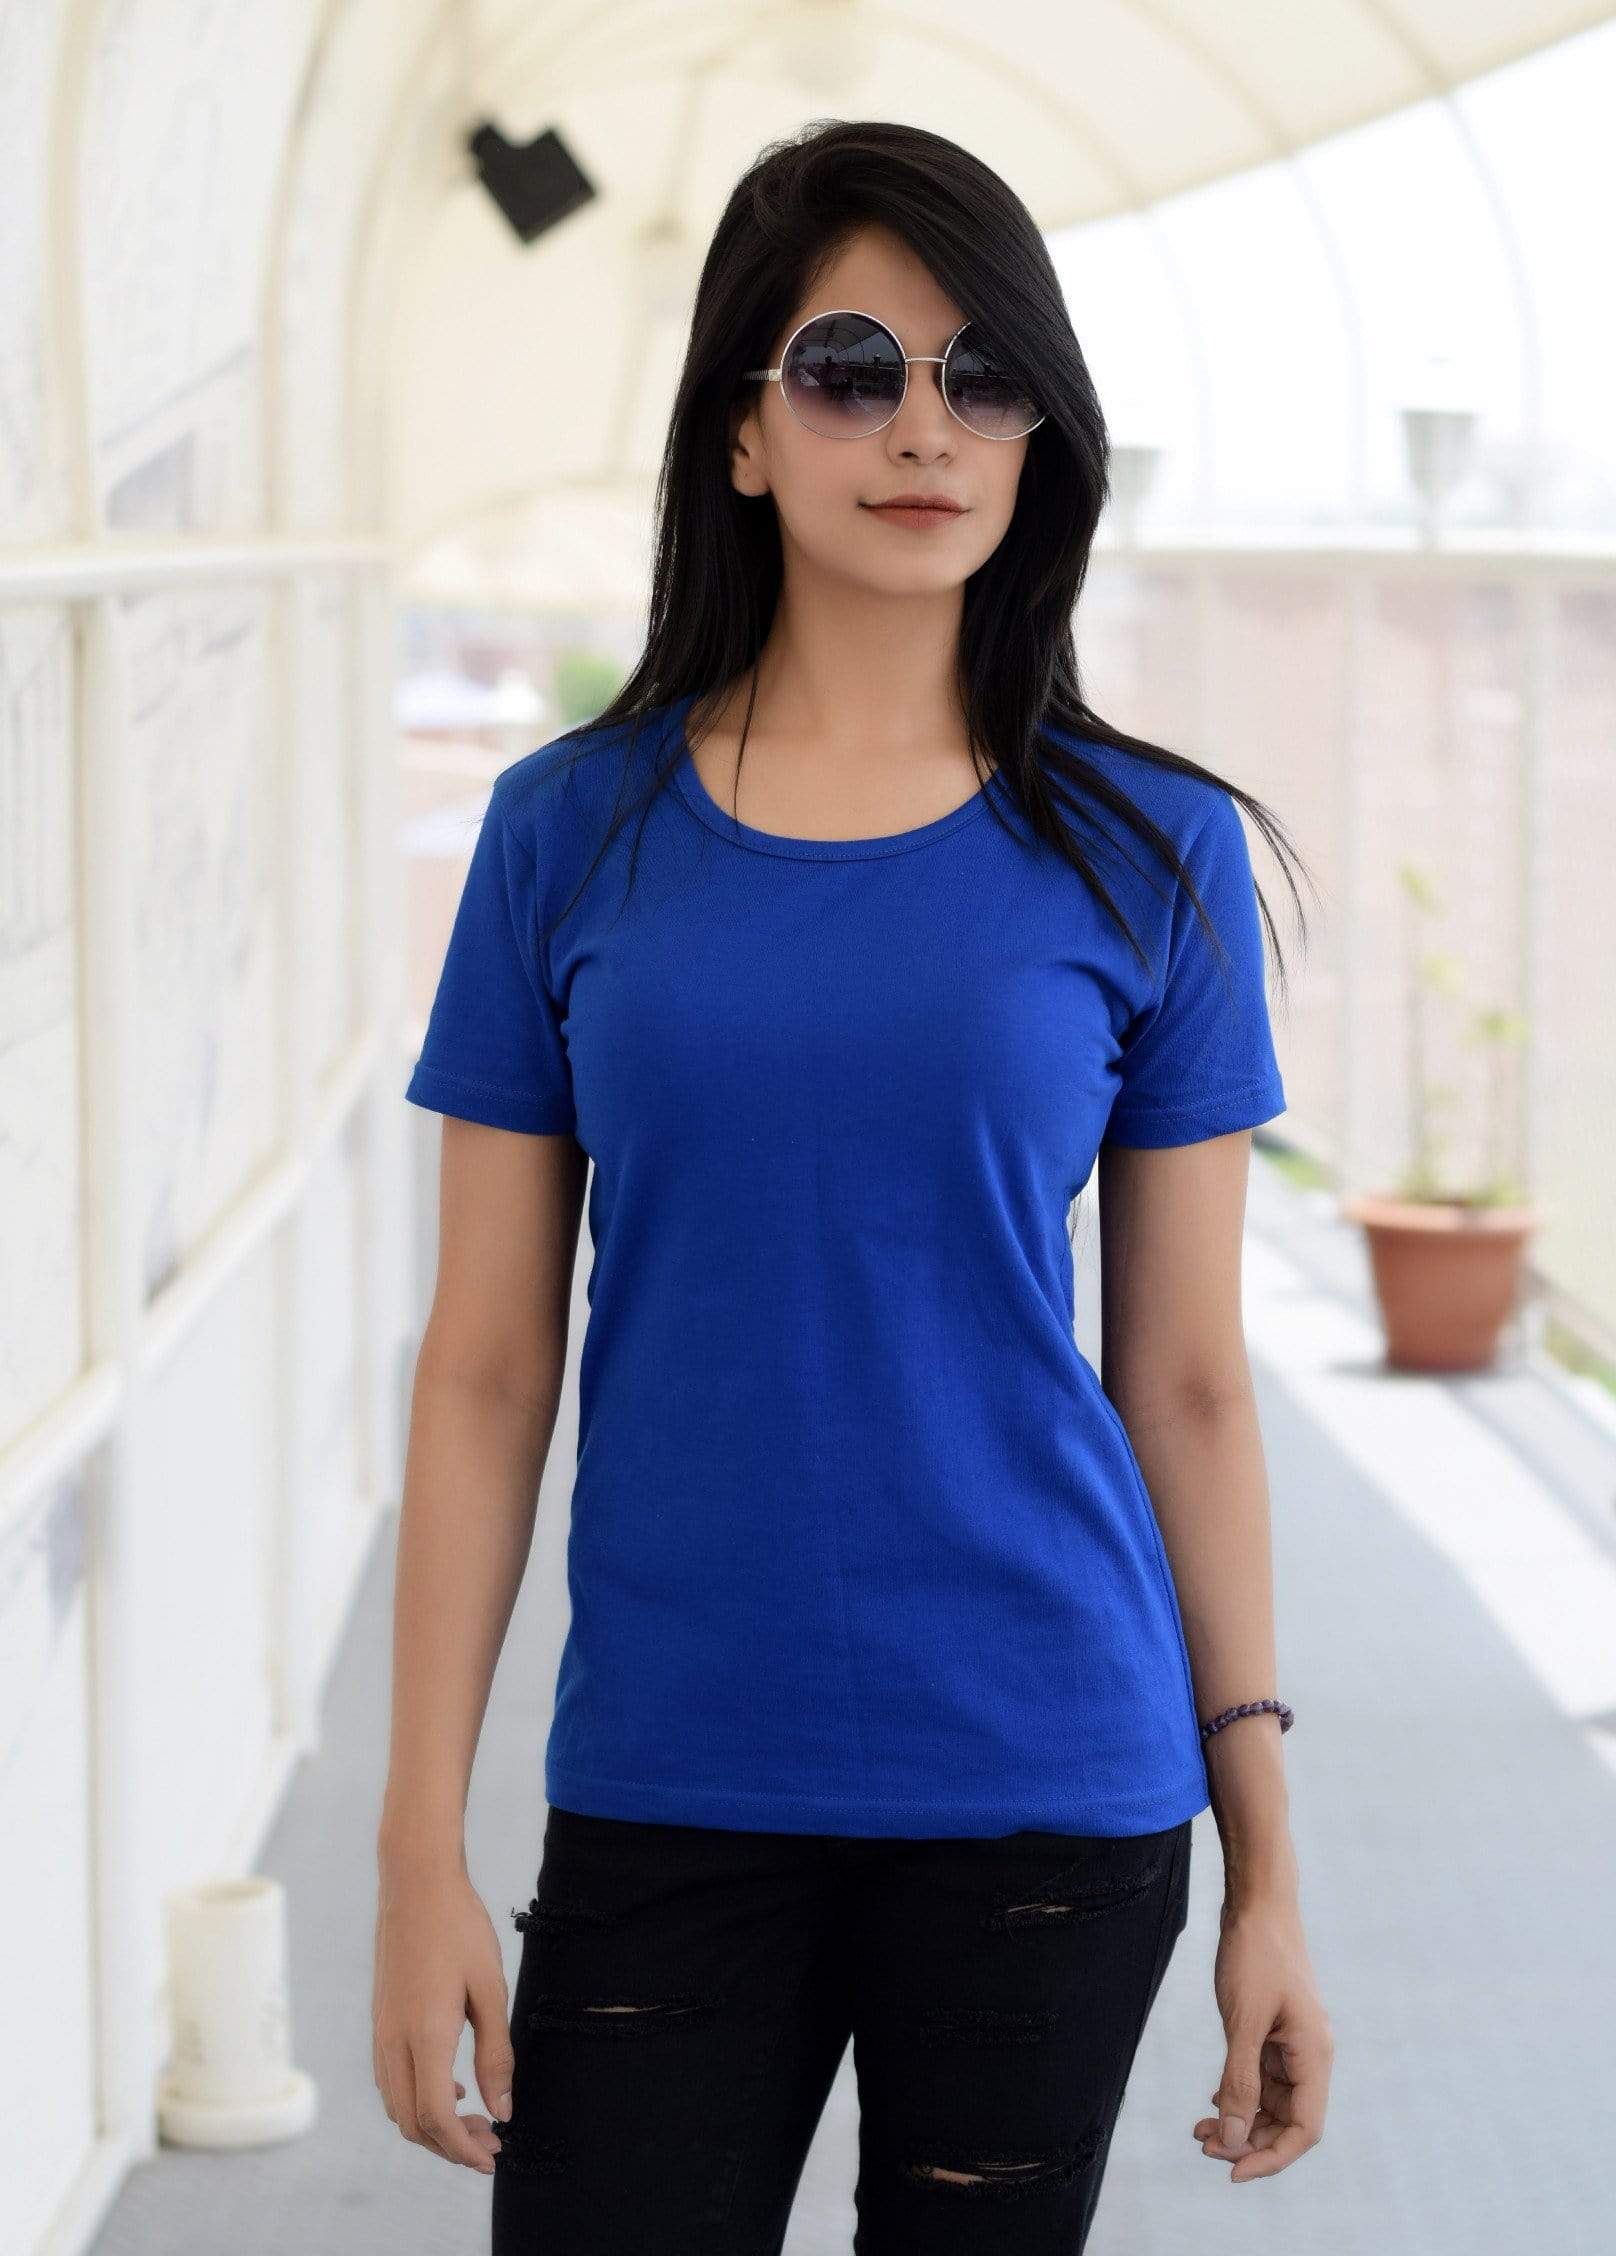 http://wolfattire.com/cdn/shop/products/women-s-plain-round-neck-t-shirt-royal-blue-women-t-shirt-wolfattire-25135790092.jpg?v=1561036248